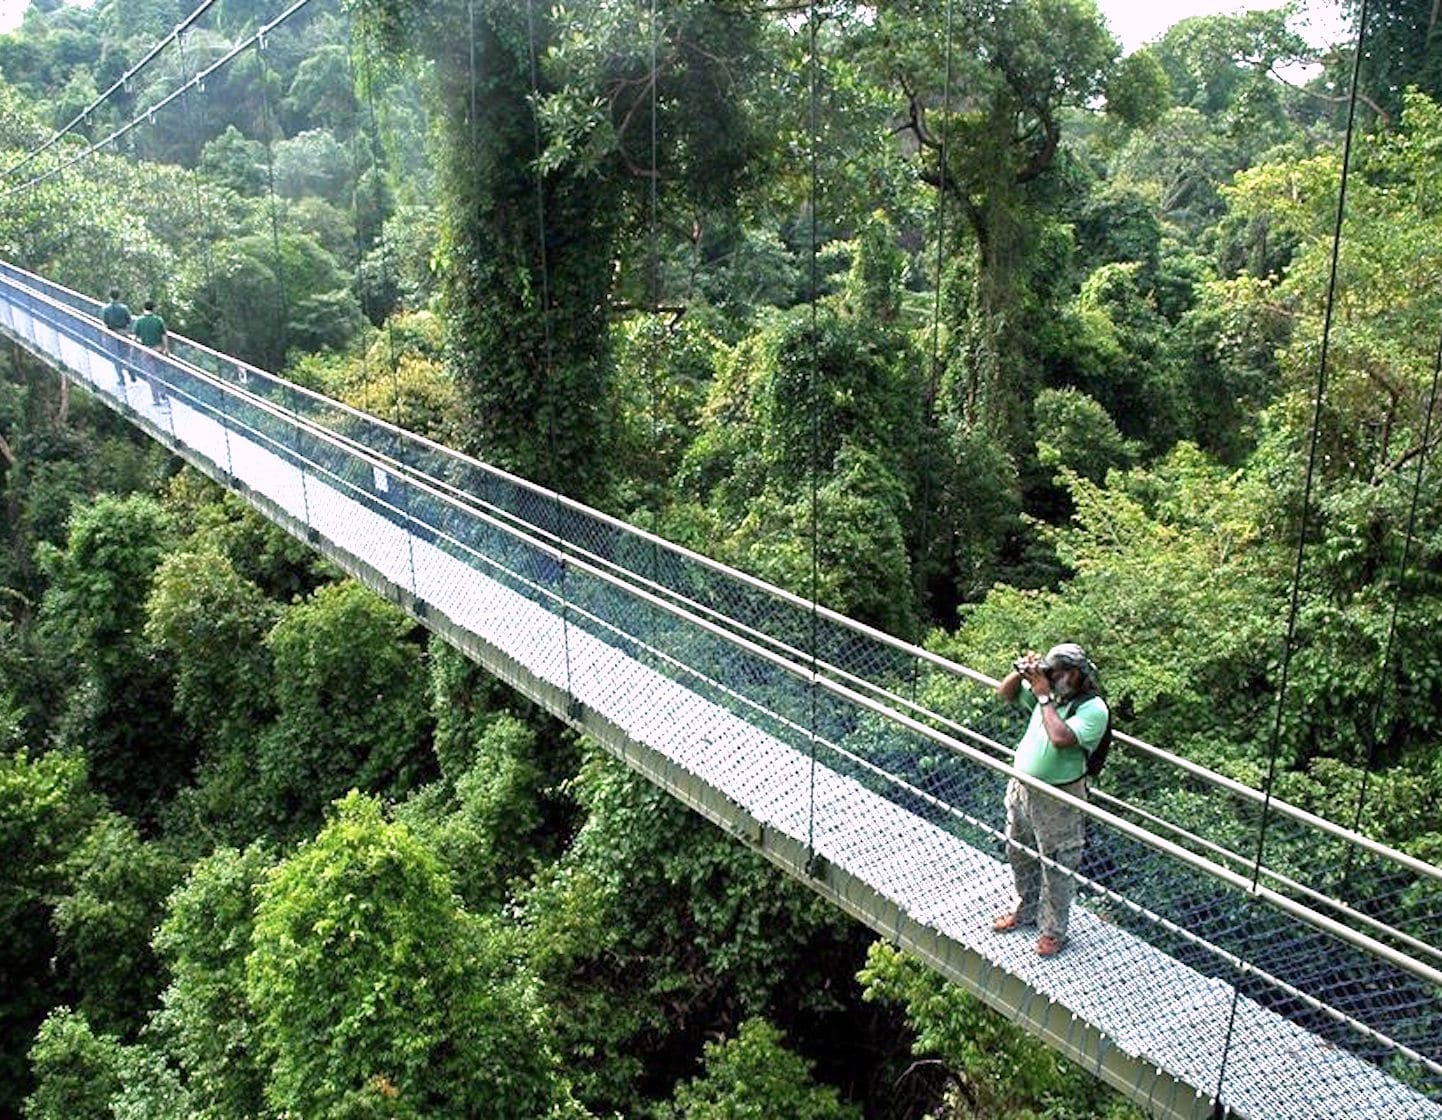 Kids activities in Singapore - visit  MacRitchie Reservoir - TreeTop Walk